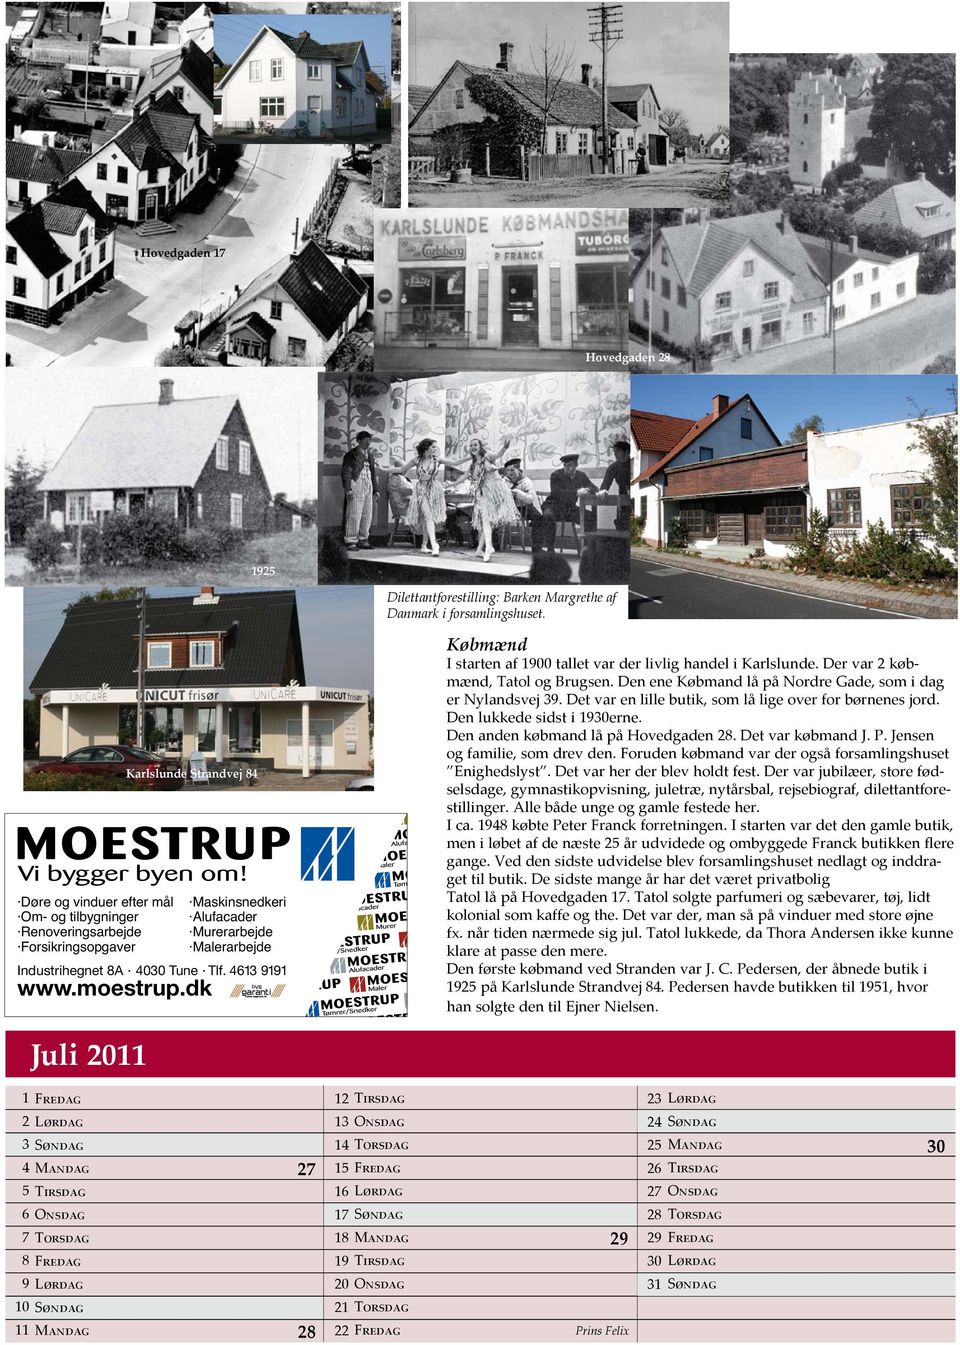 4613 9191 www.moestrup.dk Købmænd I starten af 1900 tallet var der livlig handel i Karlslunde. Der var 2 købmænd, Tatol og Brugsen. Den ene Købmand lå på Nordre Gade, som i dag er Nylandsvej 39.